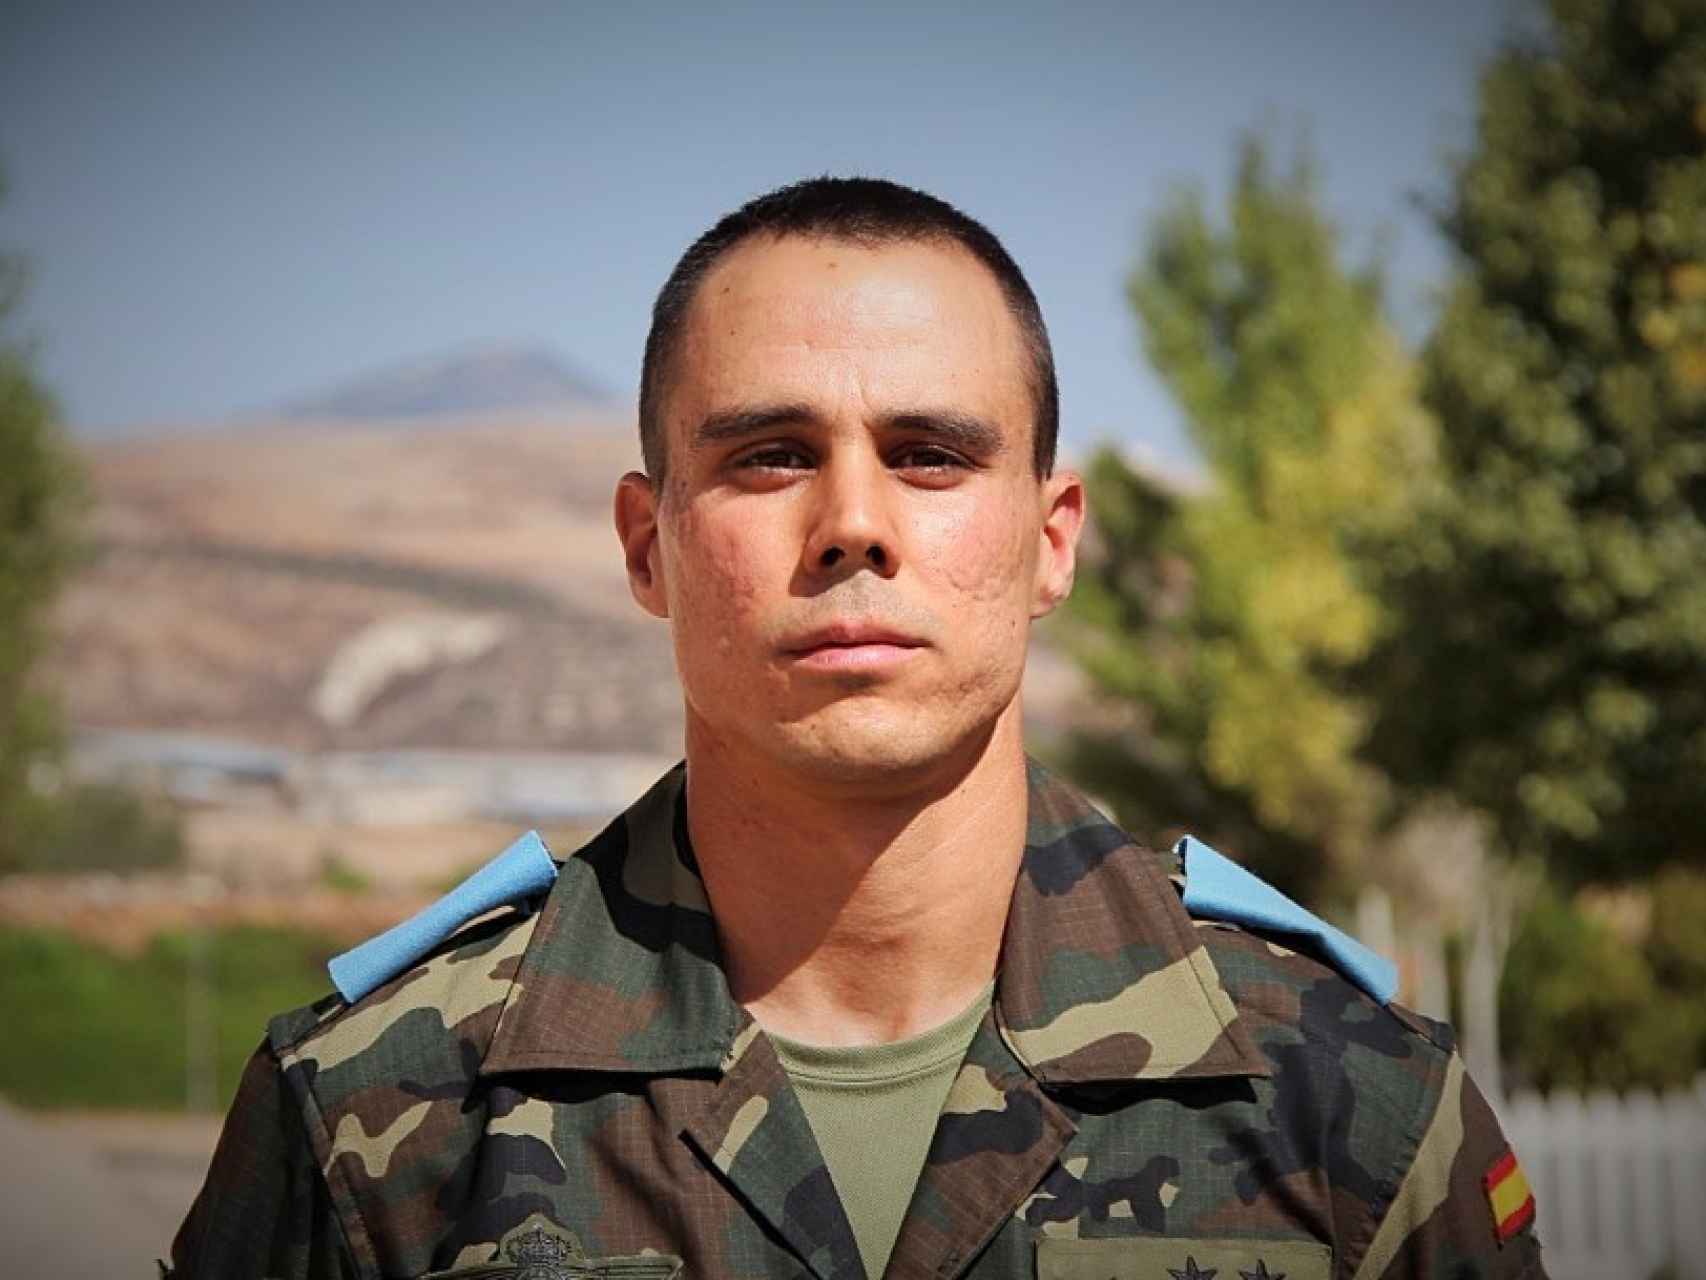 Teniente Alberto Beriguistáin Pavón, 26 años.